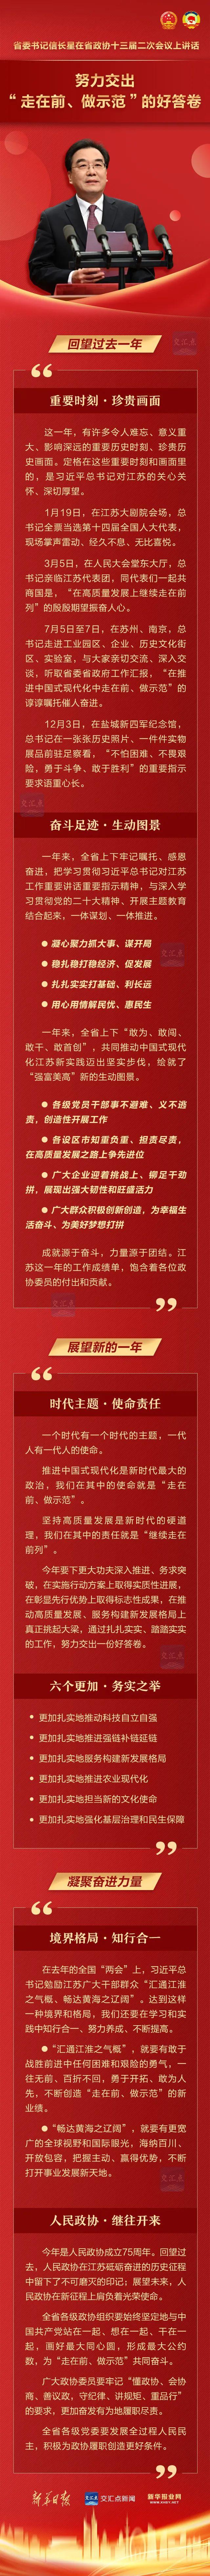 江苏省委书记信长星在省政协十三届二次会议上讲话 努力交出“走在前、做示范”的好答卷